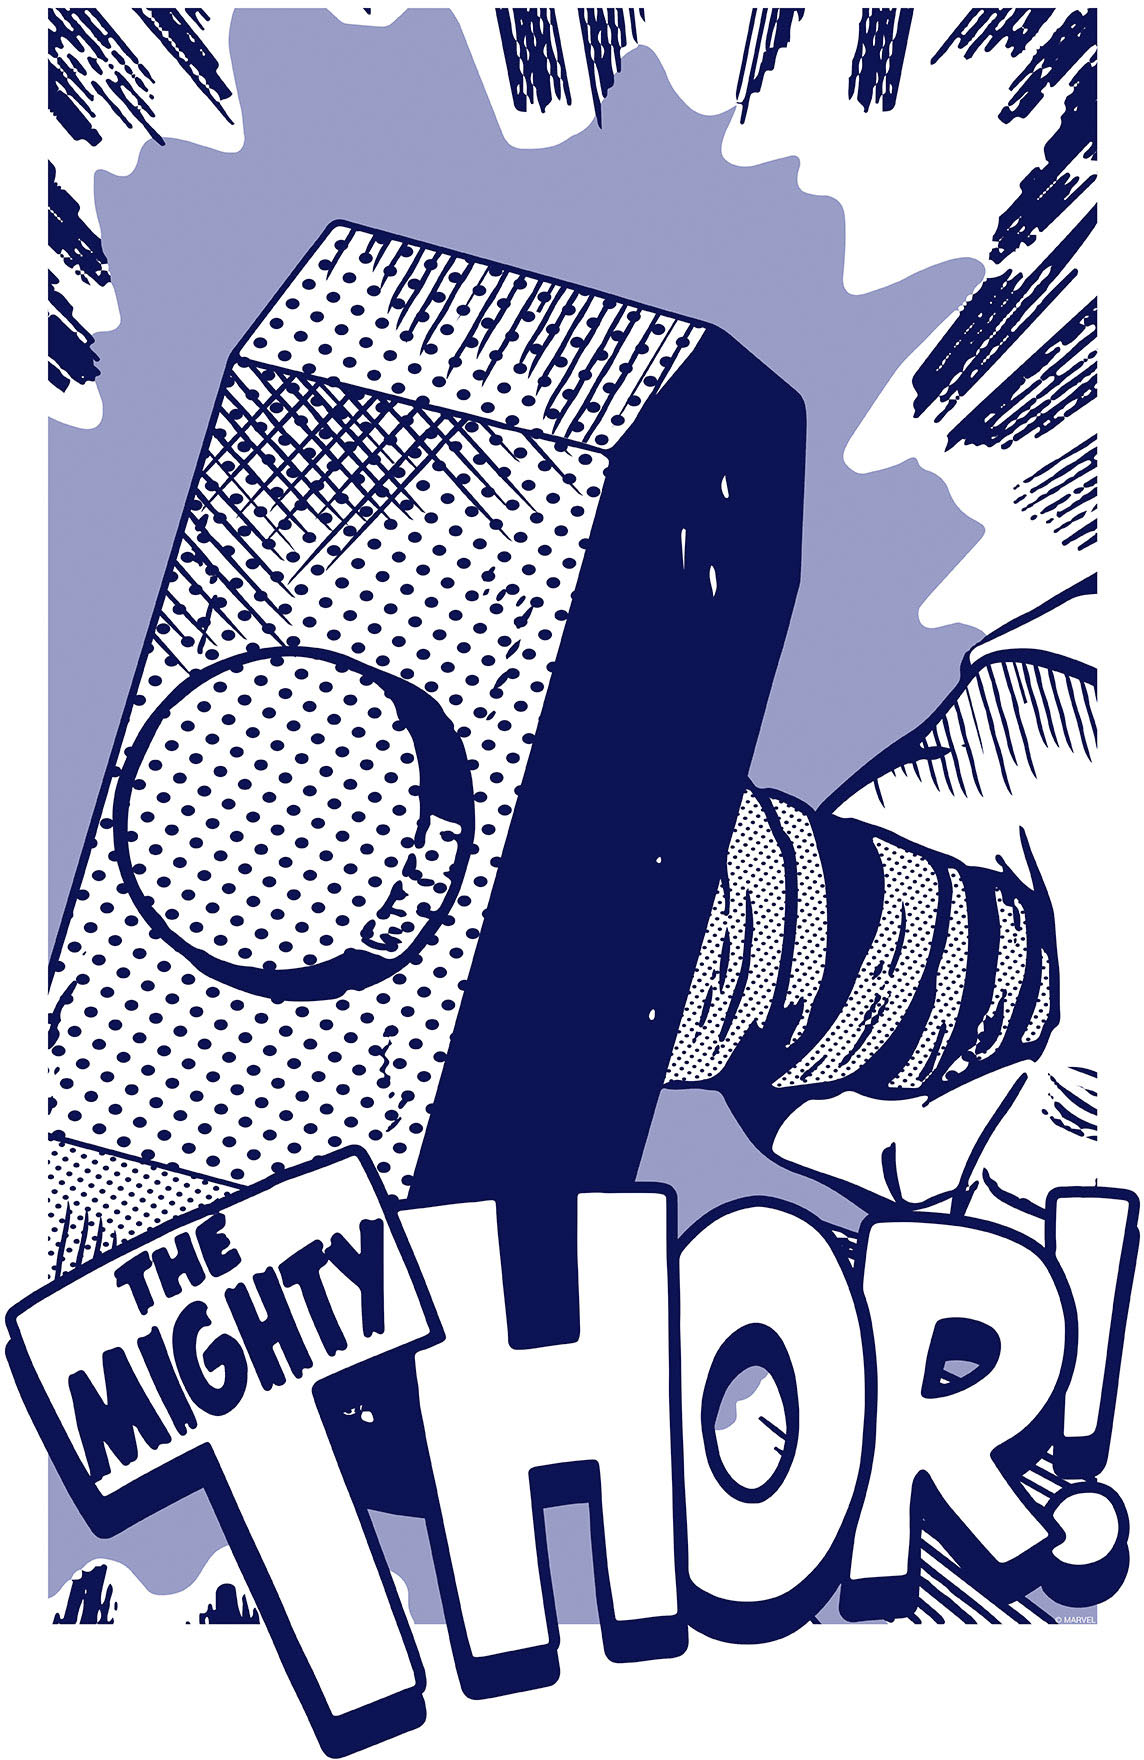 Komar Wandbild »Thor Mjölnir«, (1 St.), Deutsches Premium-Poster Fotopapier mit seidenmatter Oberfläche und hoher Lichtbeständigkeit. Für fotorealistische Drucke mit gestochen scharfen Details und hervorragender Farbbrillanz. von Komar